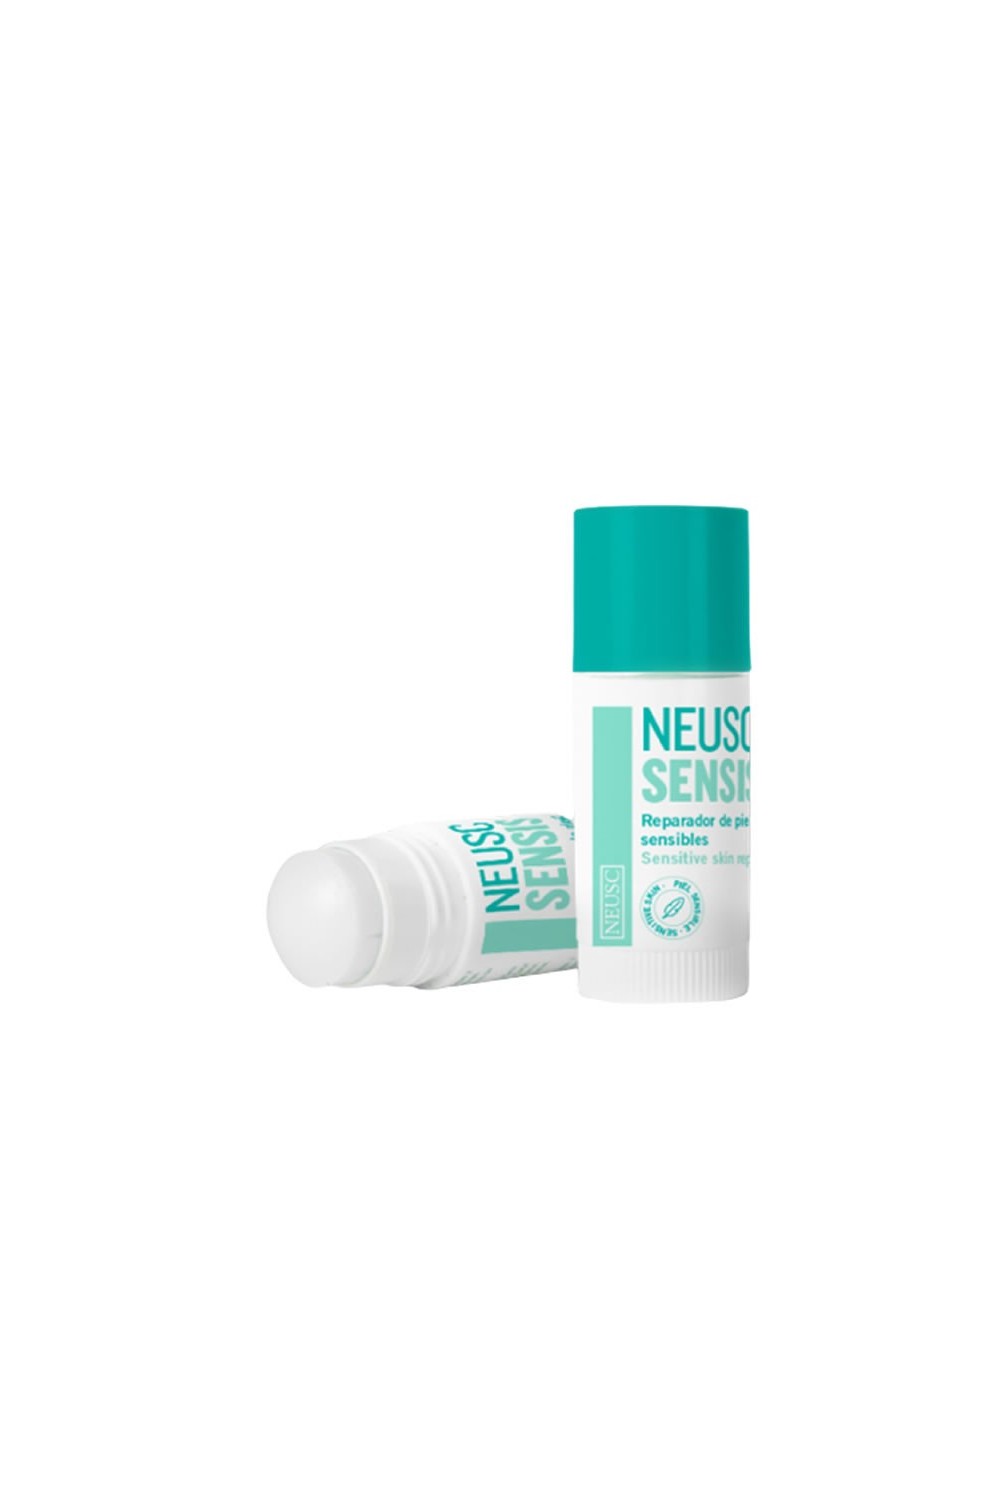 Neusc Sensis Sensitive Skin Stick 24g